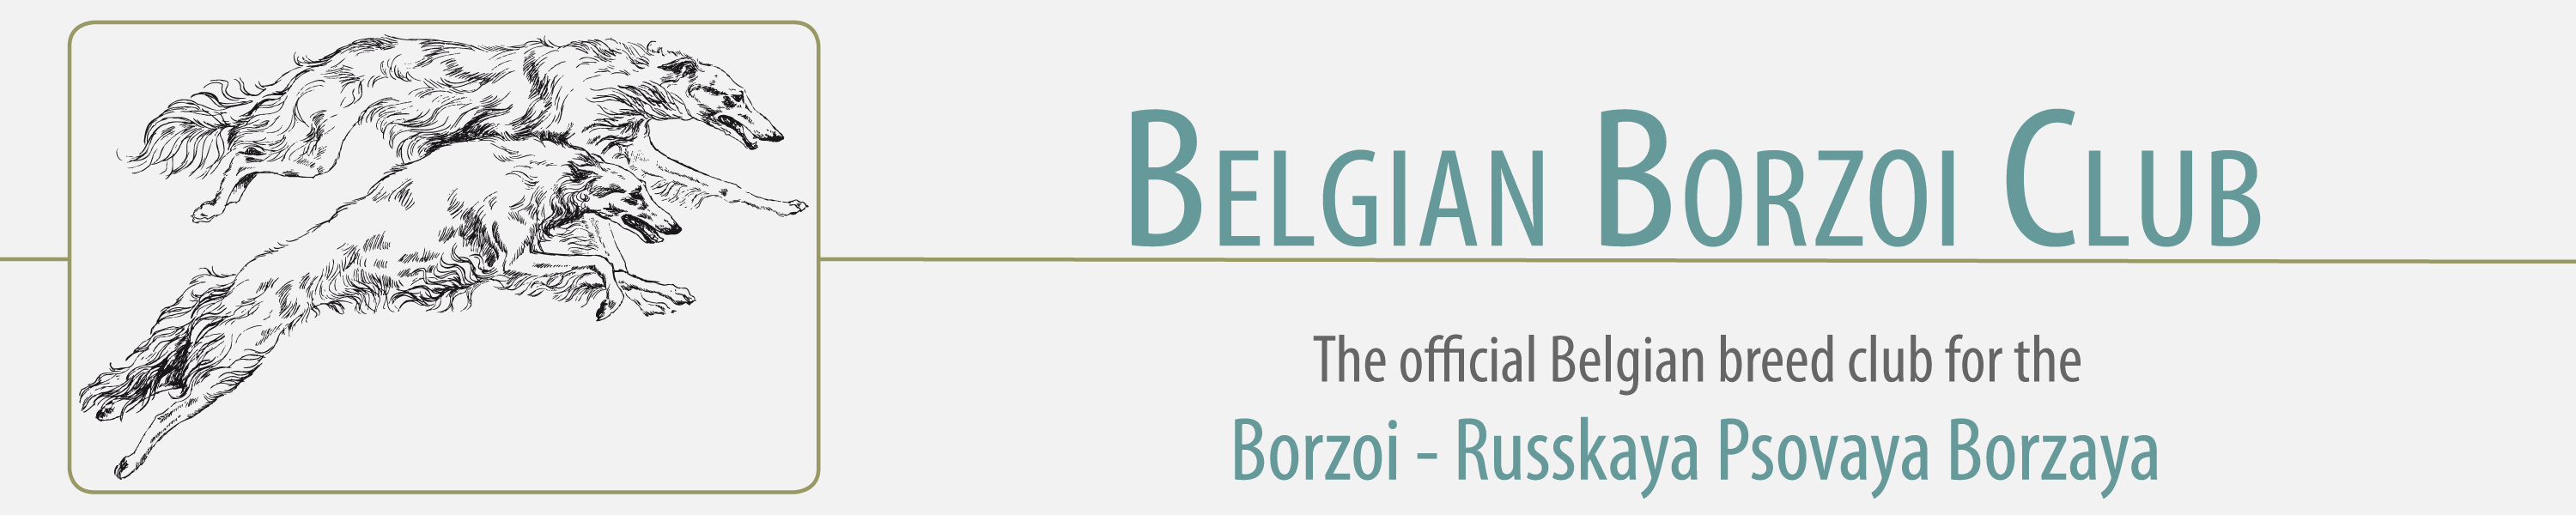 Belgian Borzoi Club